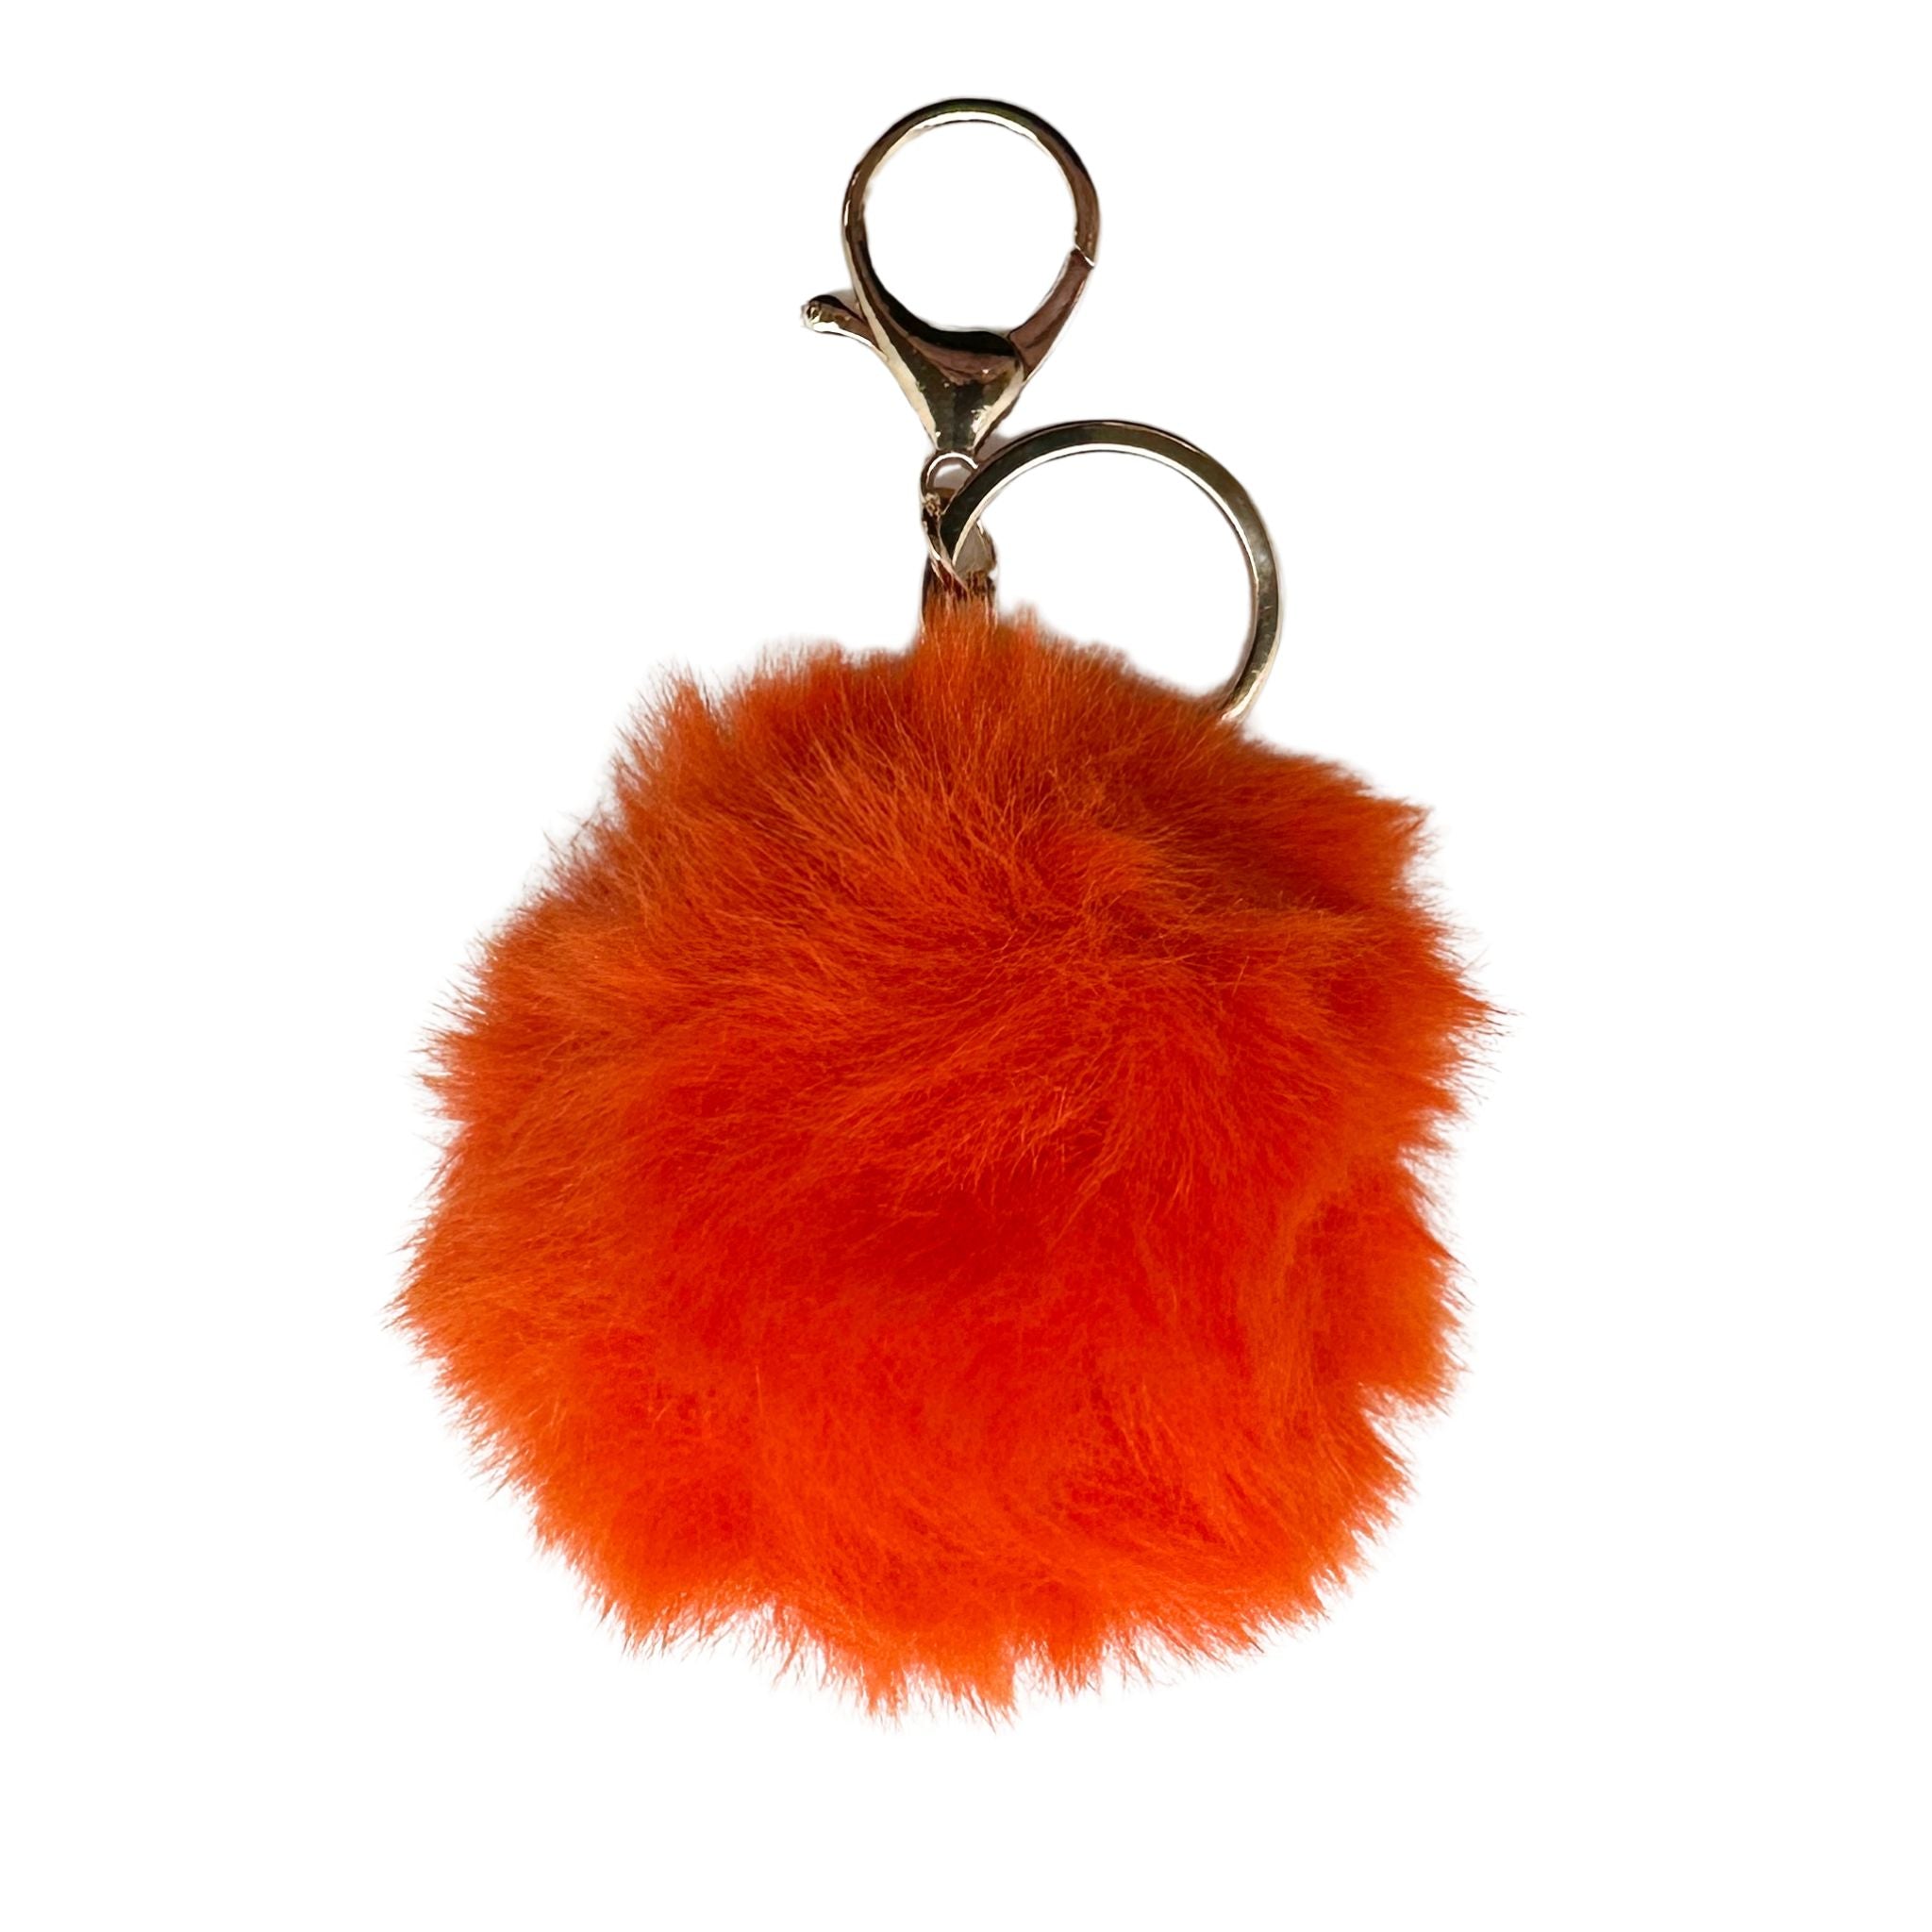 Faux Fur Pom Pom Keychain - Bright Orange